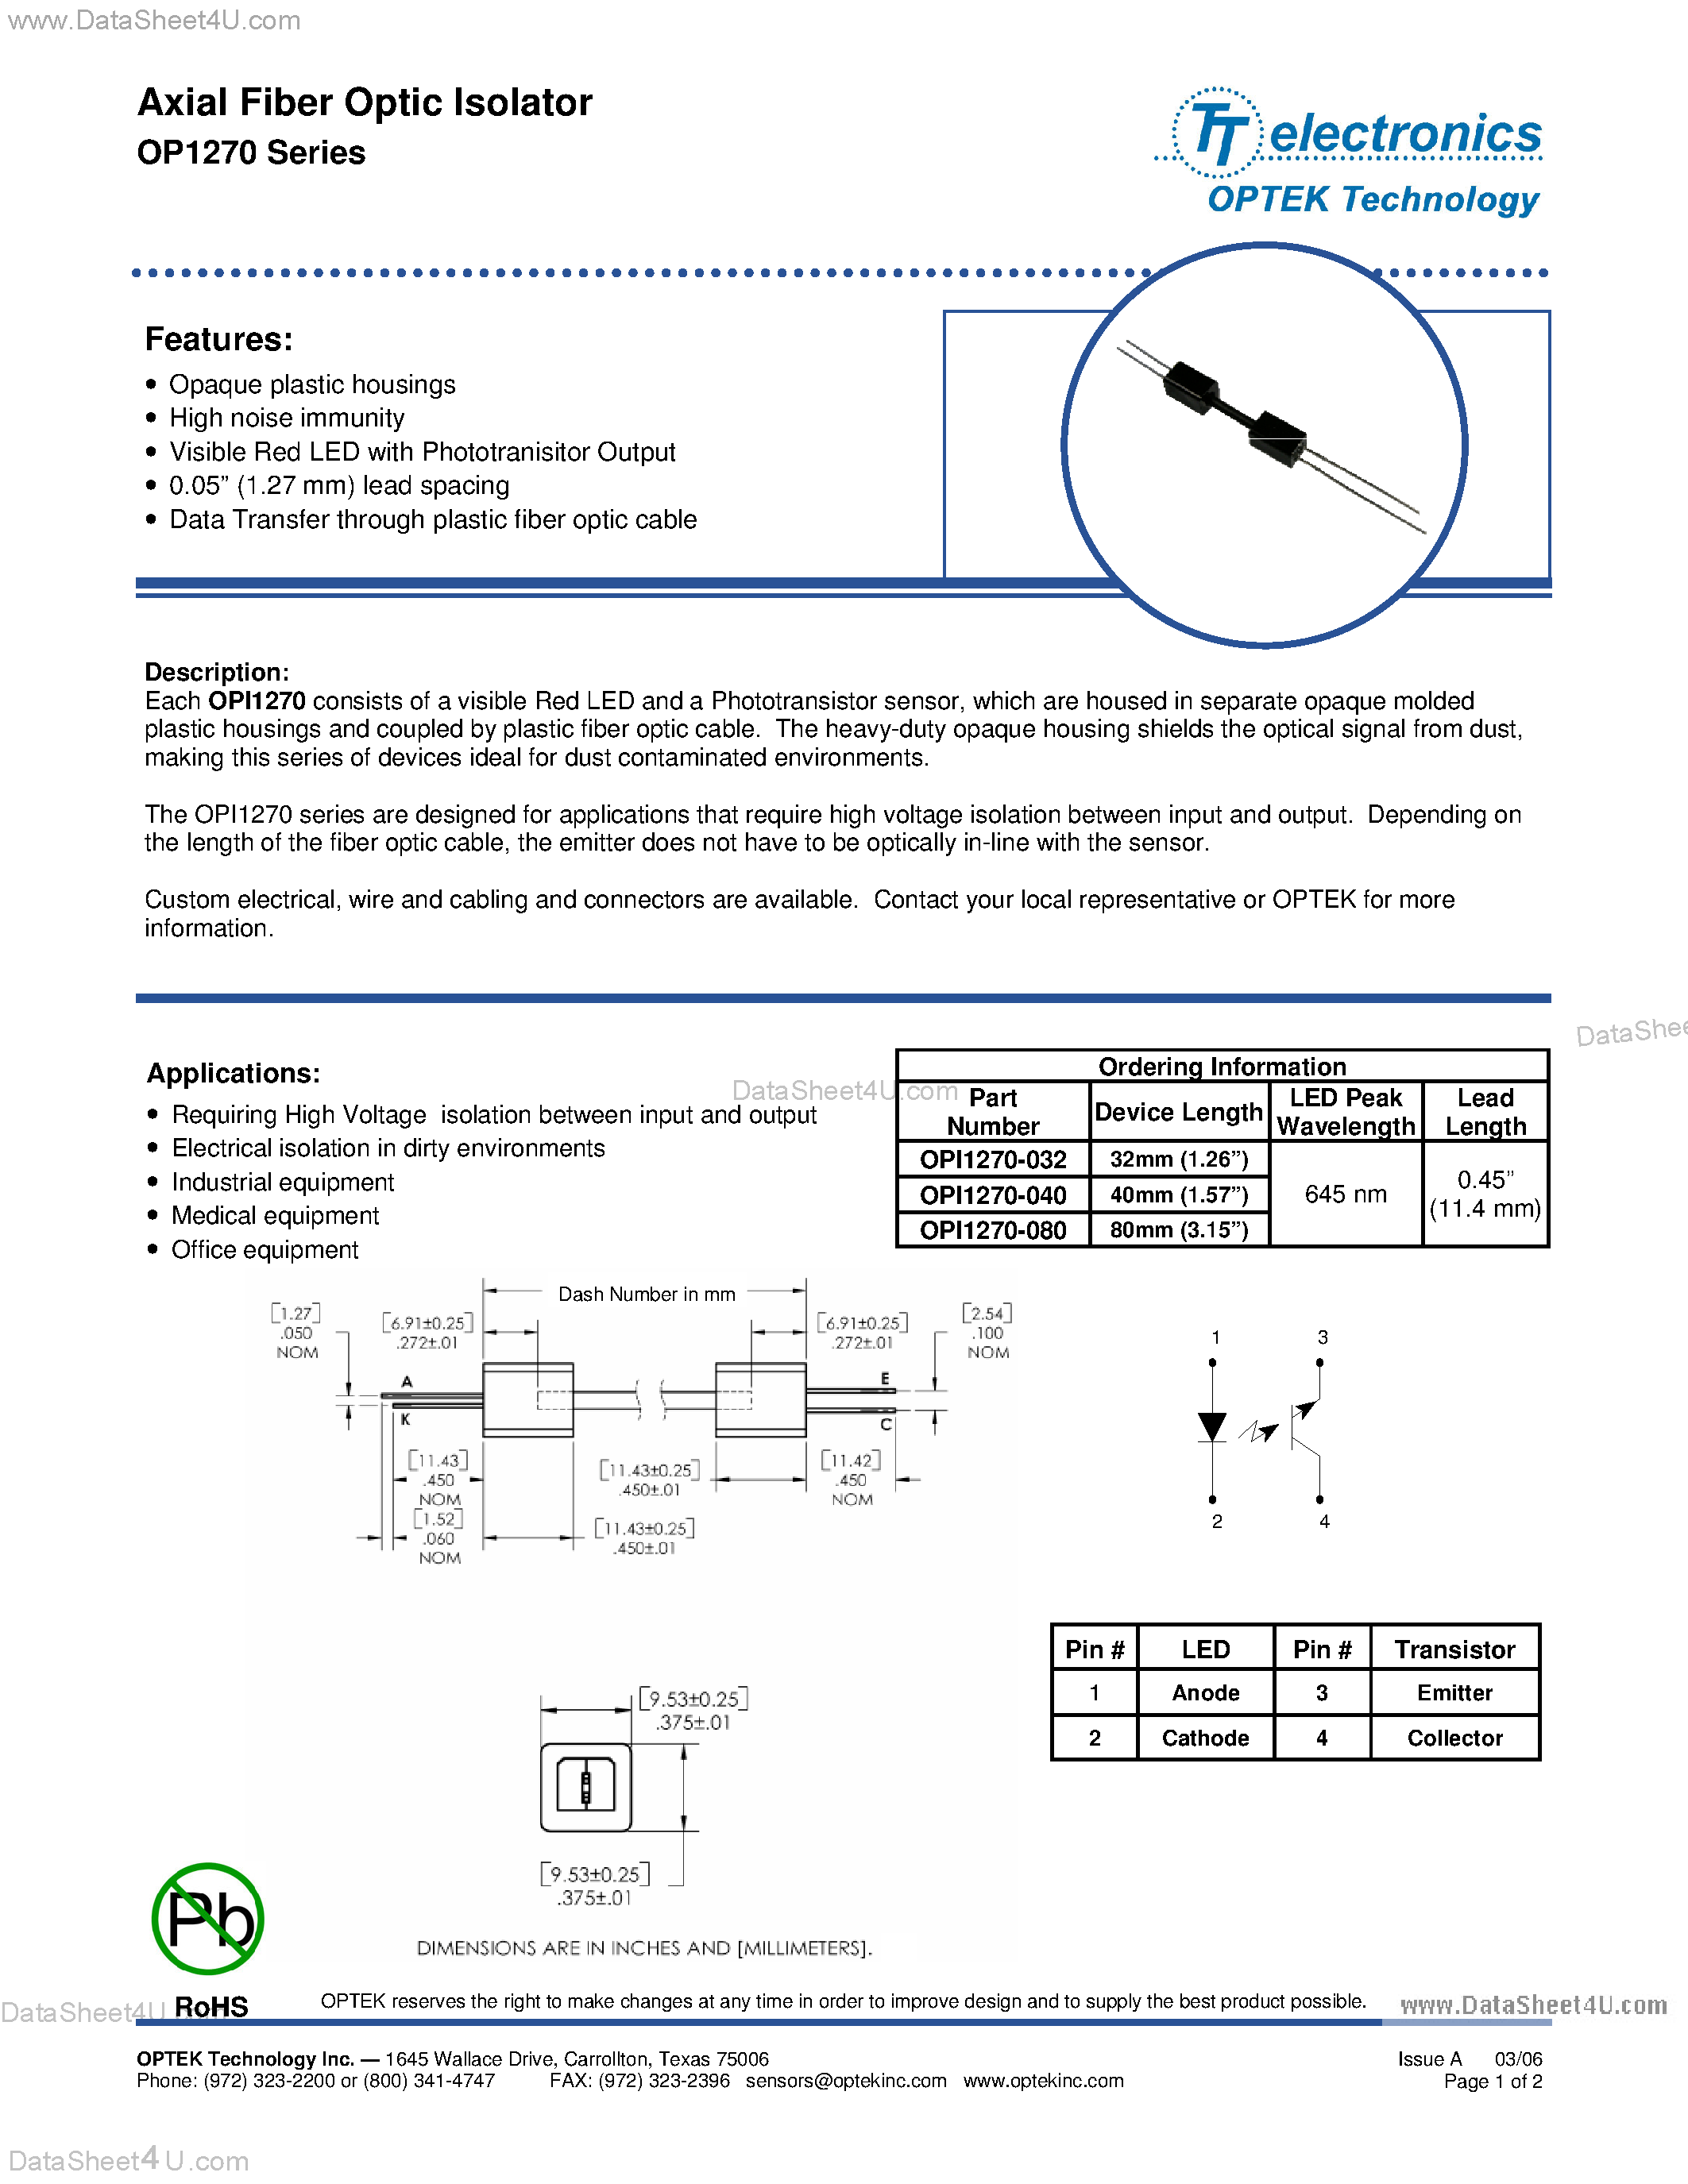 Даташит OP1270 - Axial Fiber Optic Isolator страница 1